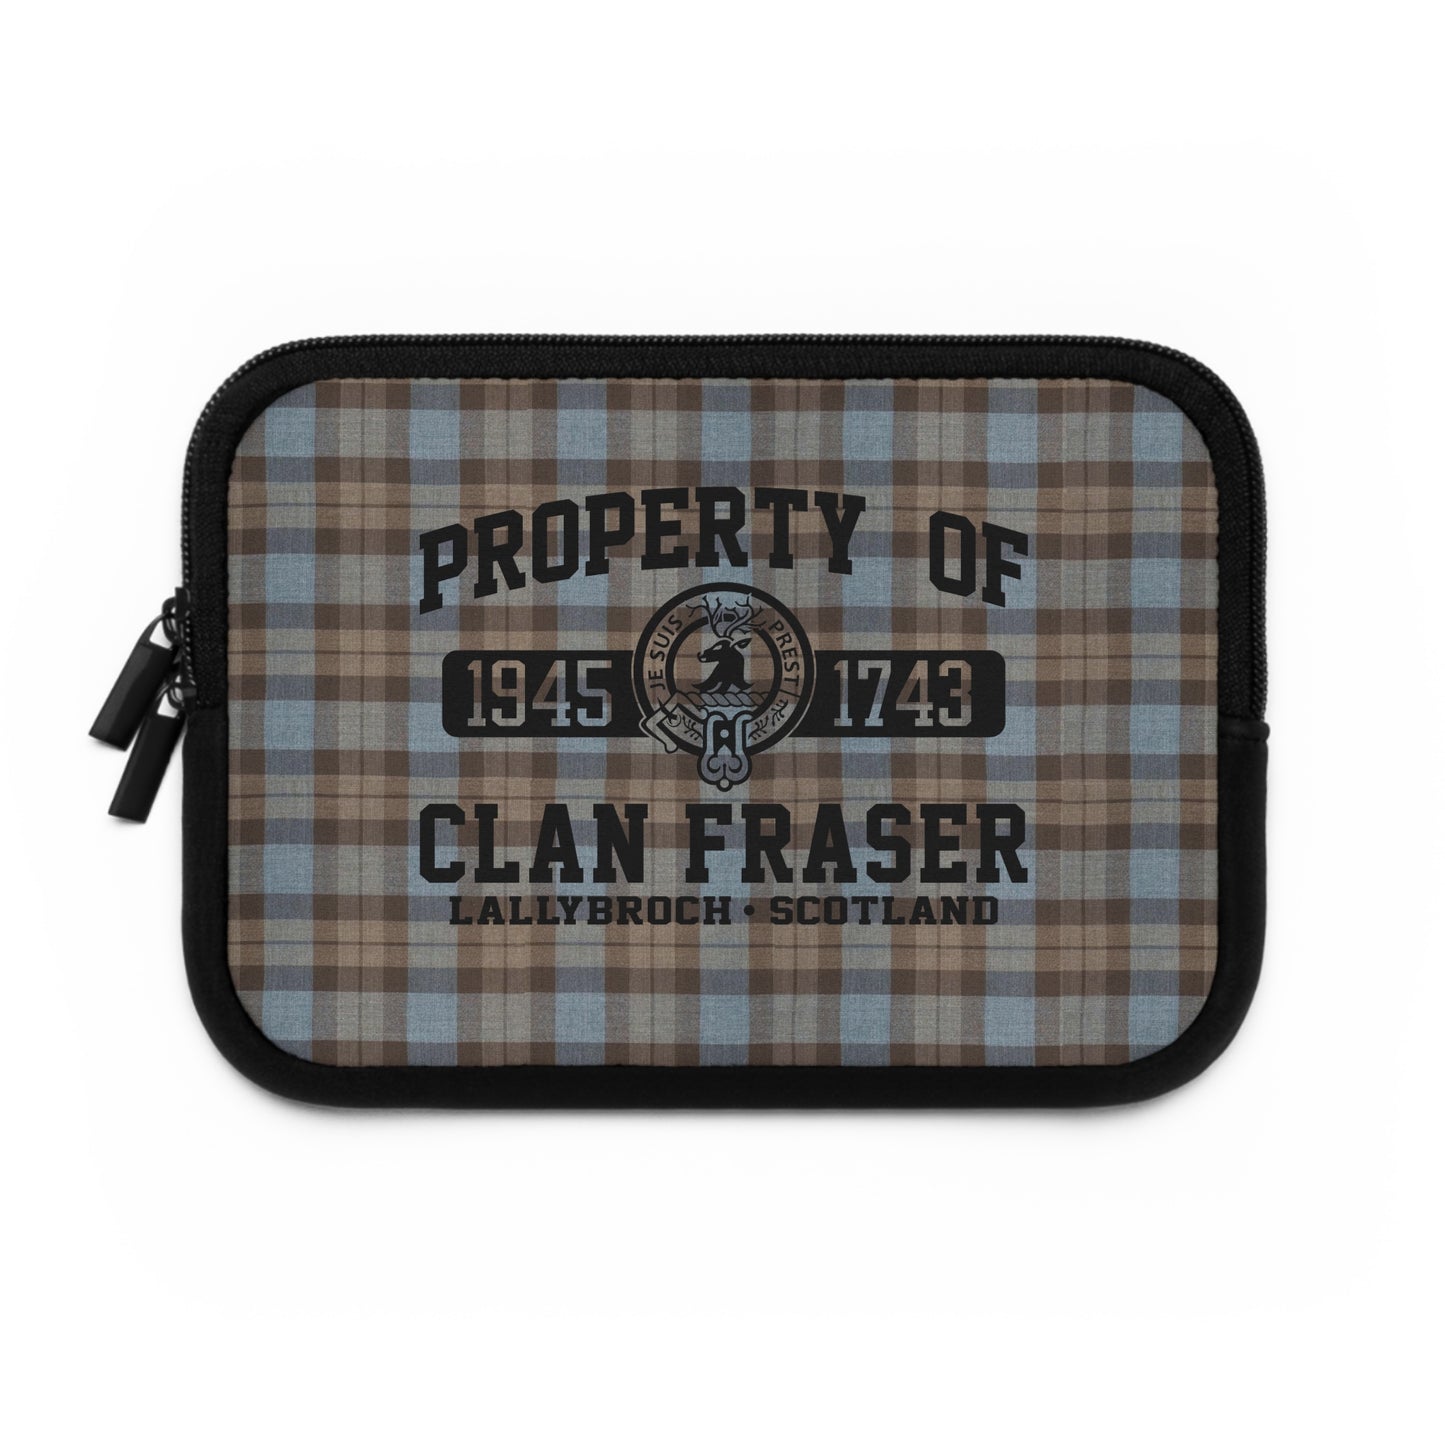 Property of Clan Fraser Laptop Sleeve - Outlander Fans